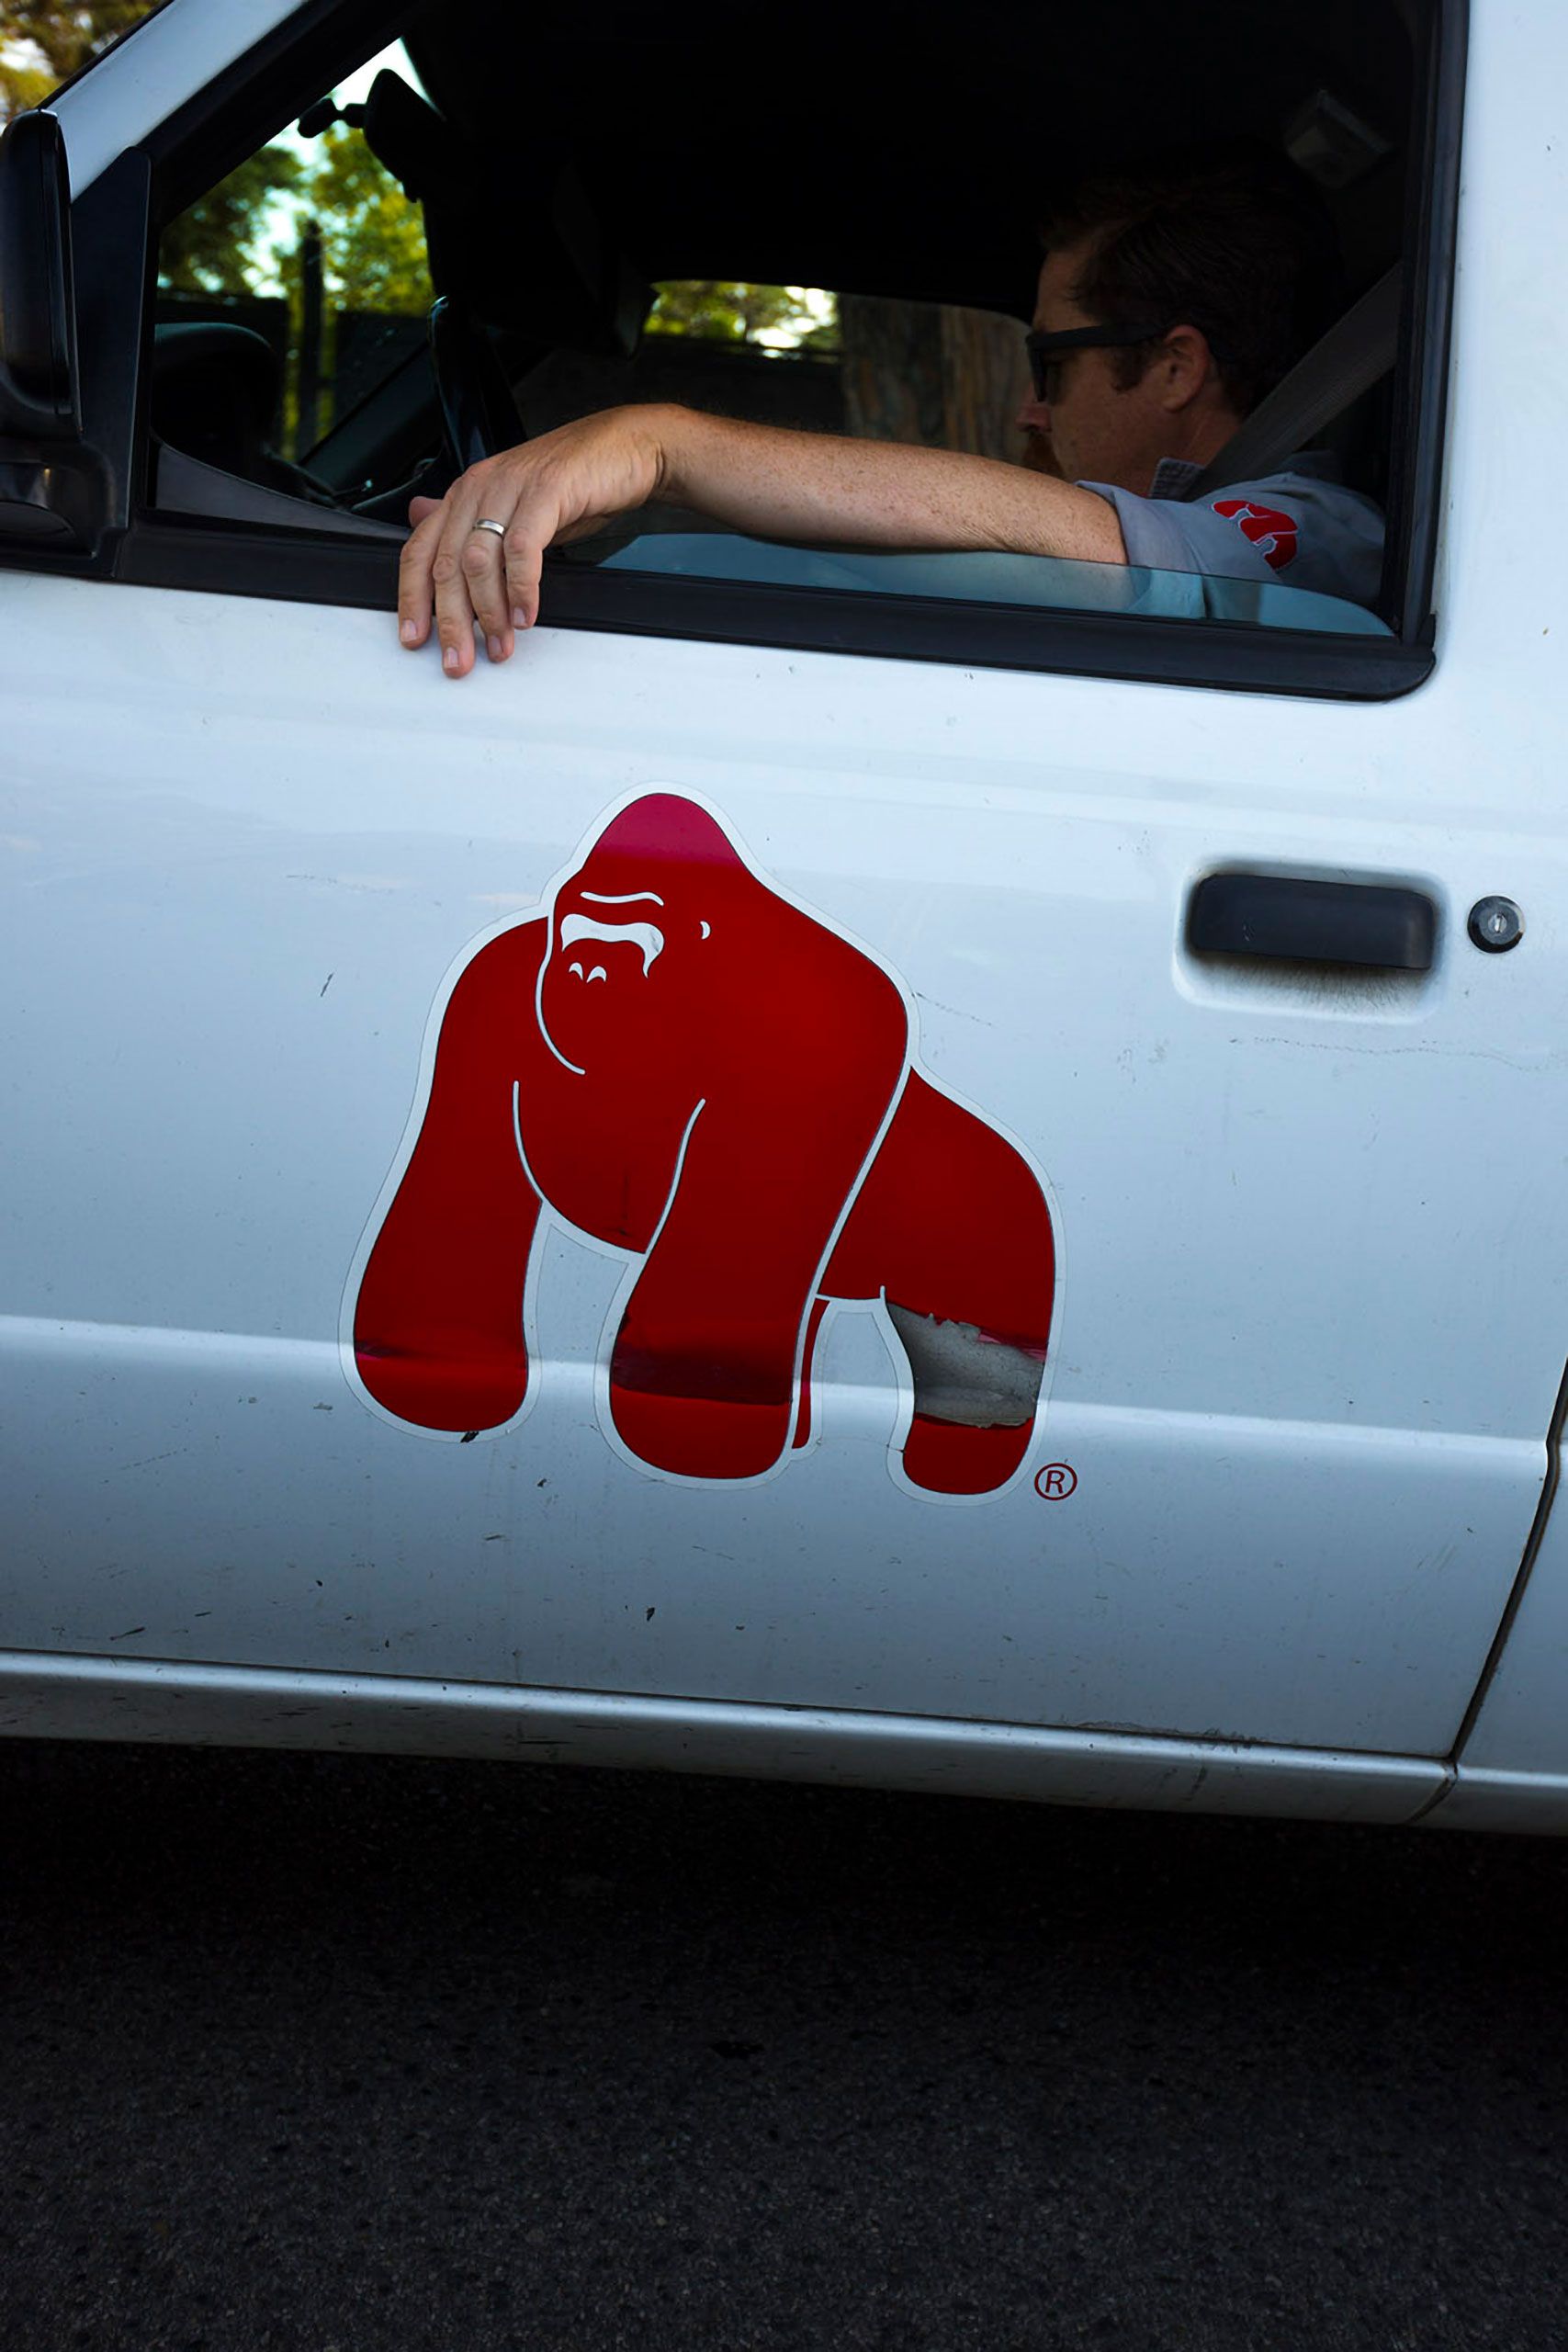 Gorilla on truck door